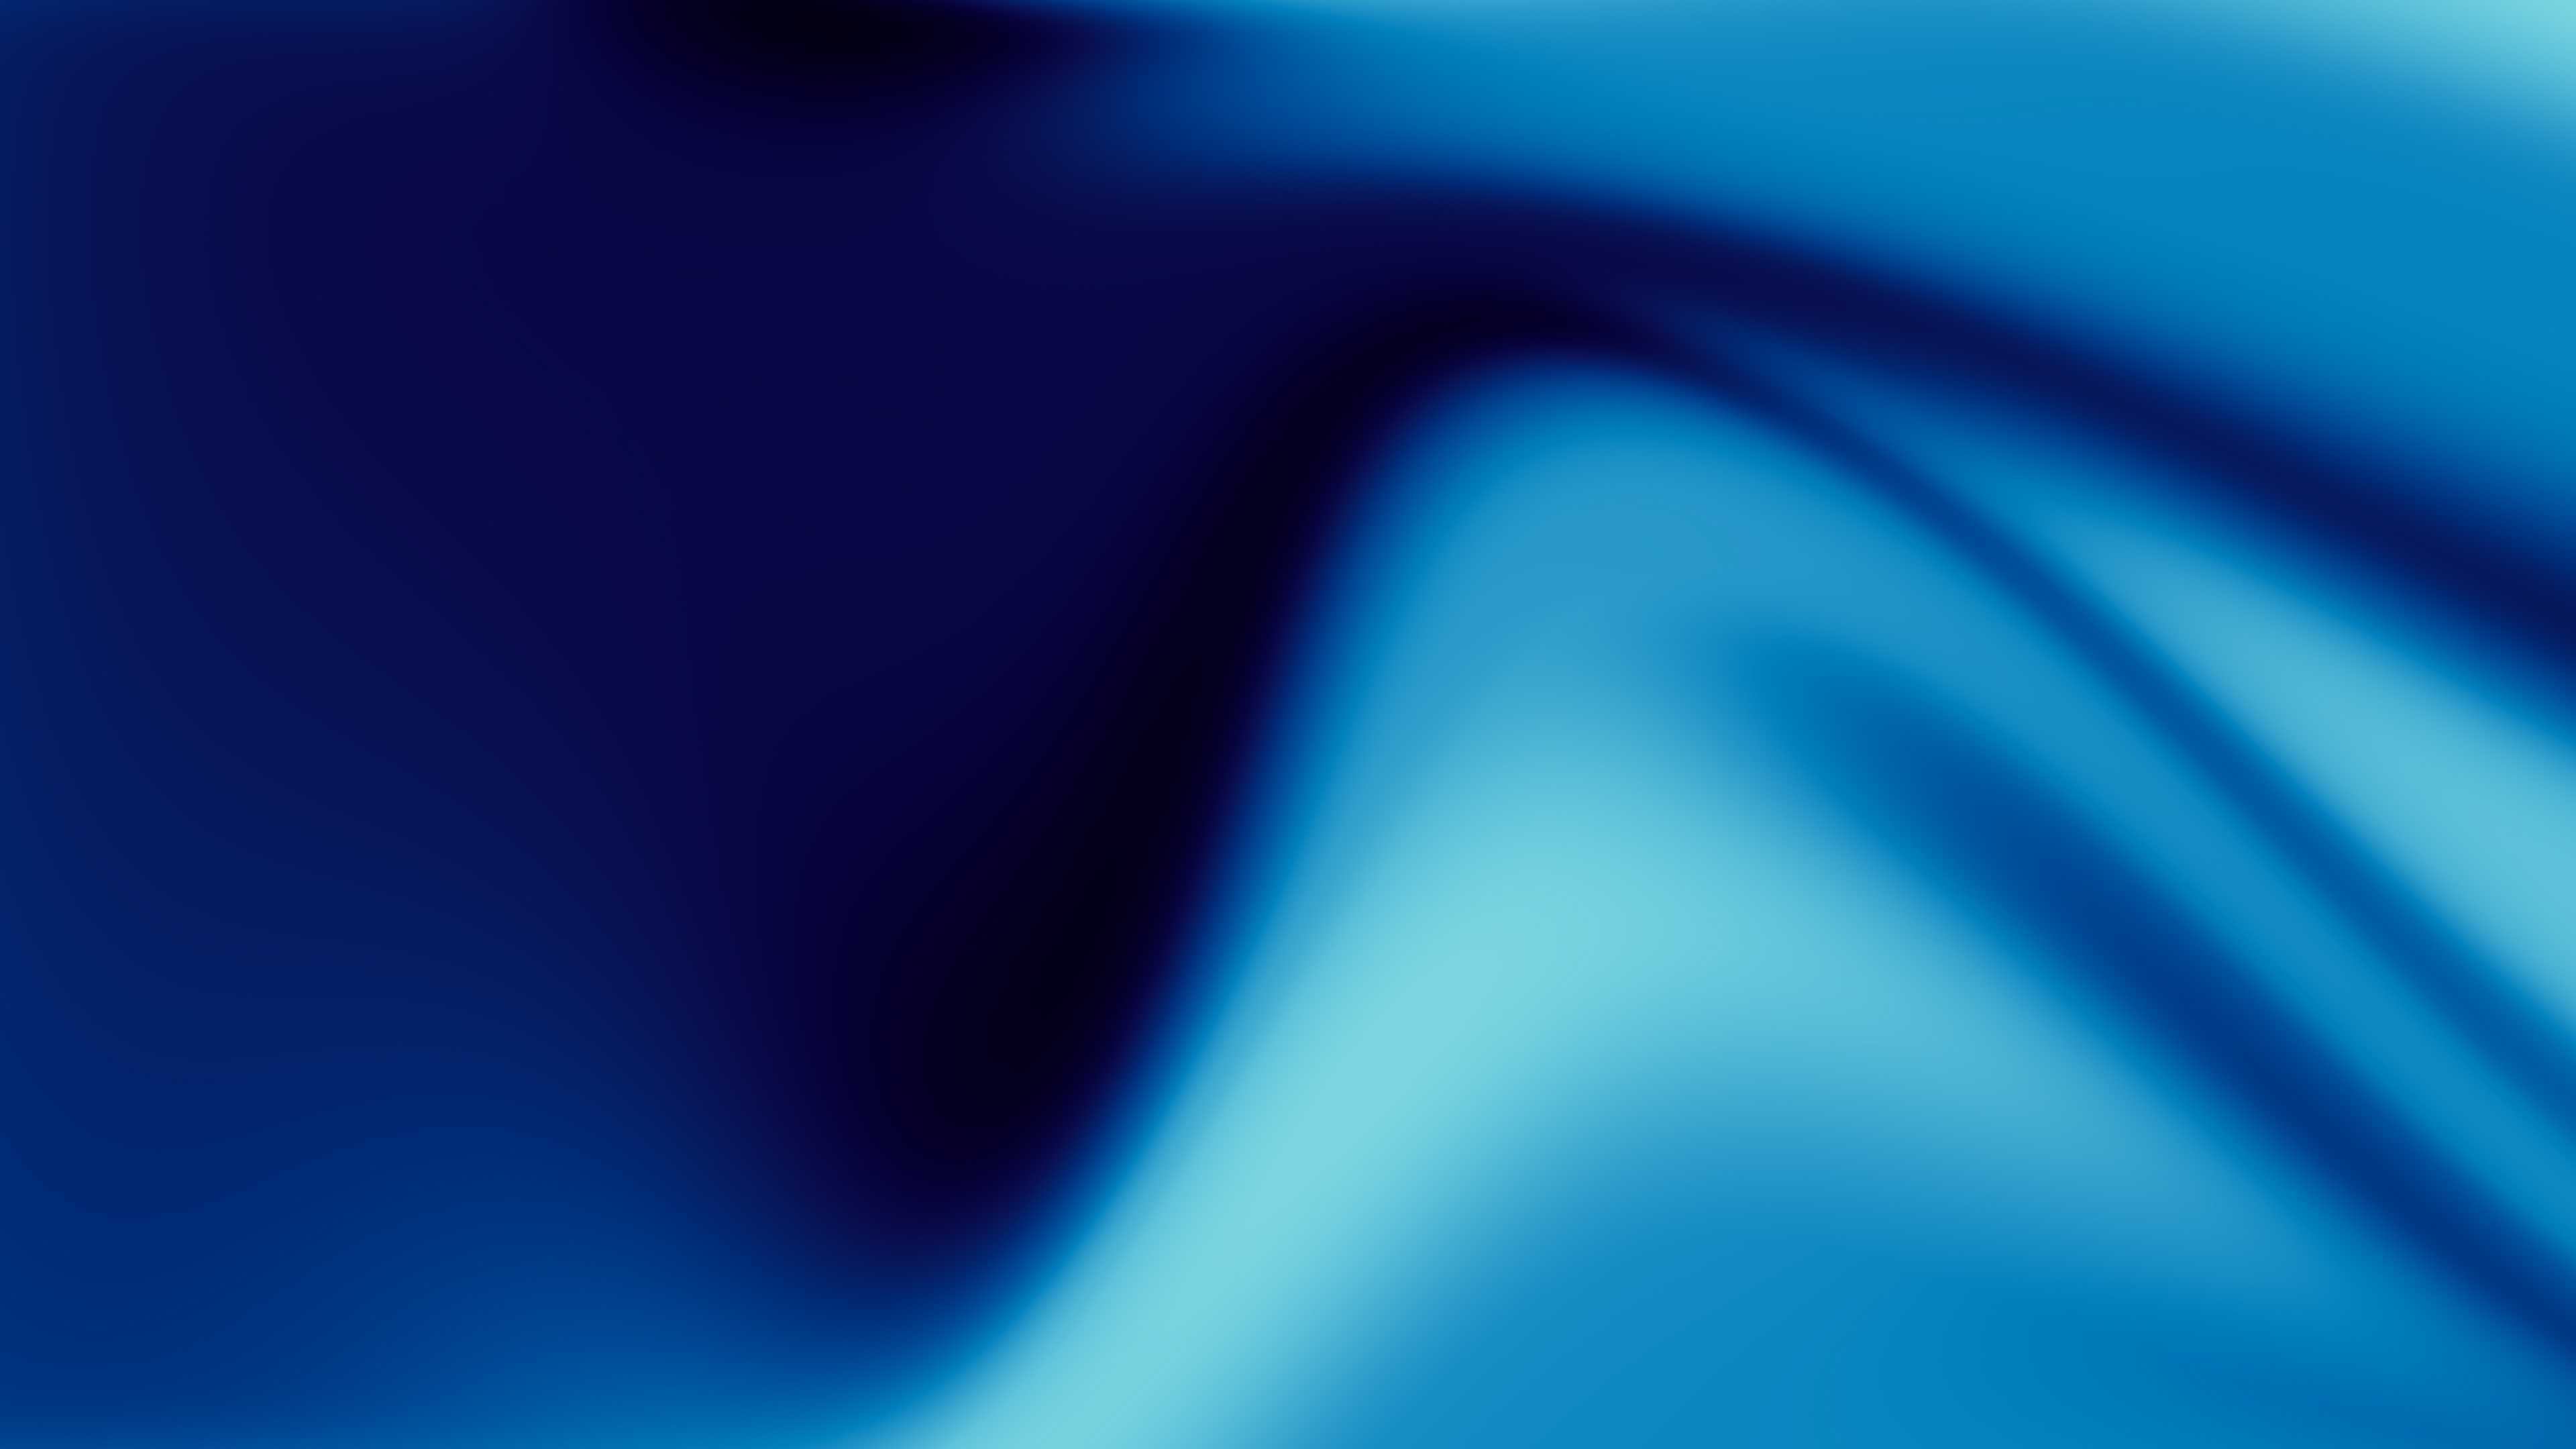 Hãy tận hưởng vẻ đẹp từ hình nền đội màu xanh dương Gradient 4K! Đây là một tác phẩm nghệ thuật số với màu sắc chuyển động tinh tế, đem lại cảm giác thư giãn và tươi mới cho chủ nhân. Tải ngay để trải nghiệm và cùng đắm chìm trong không gian thưởng lãm của hình nền.